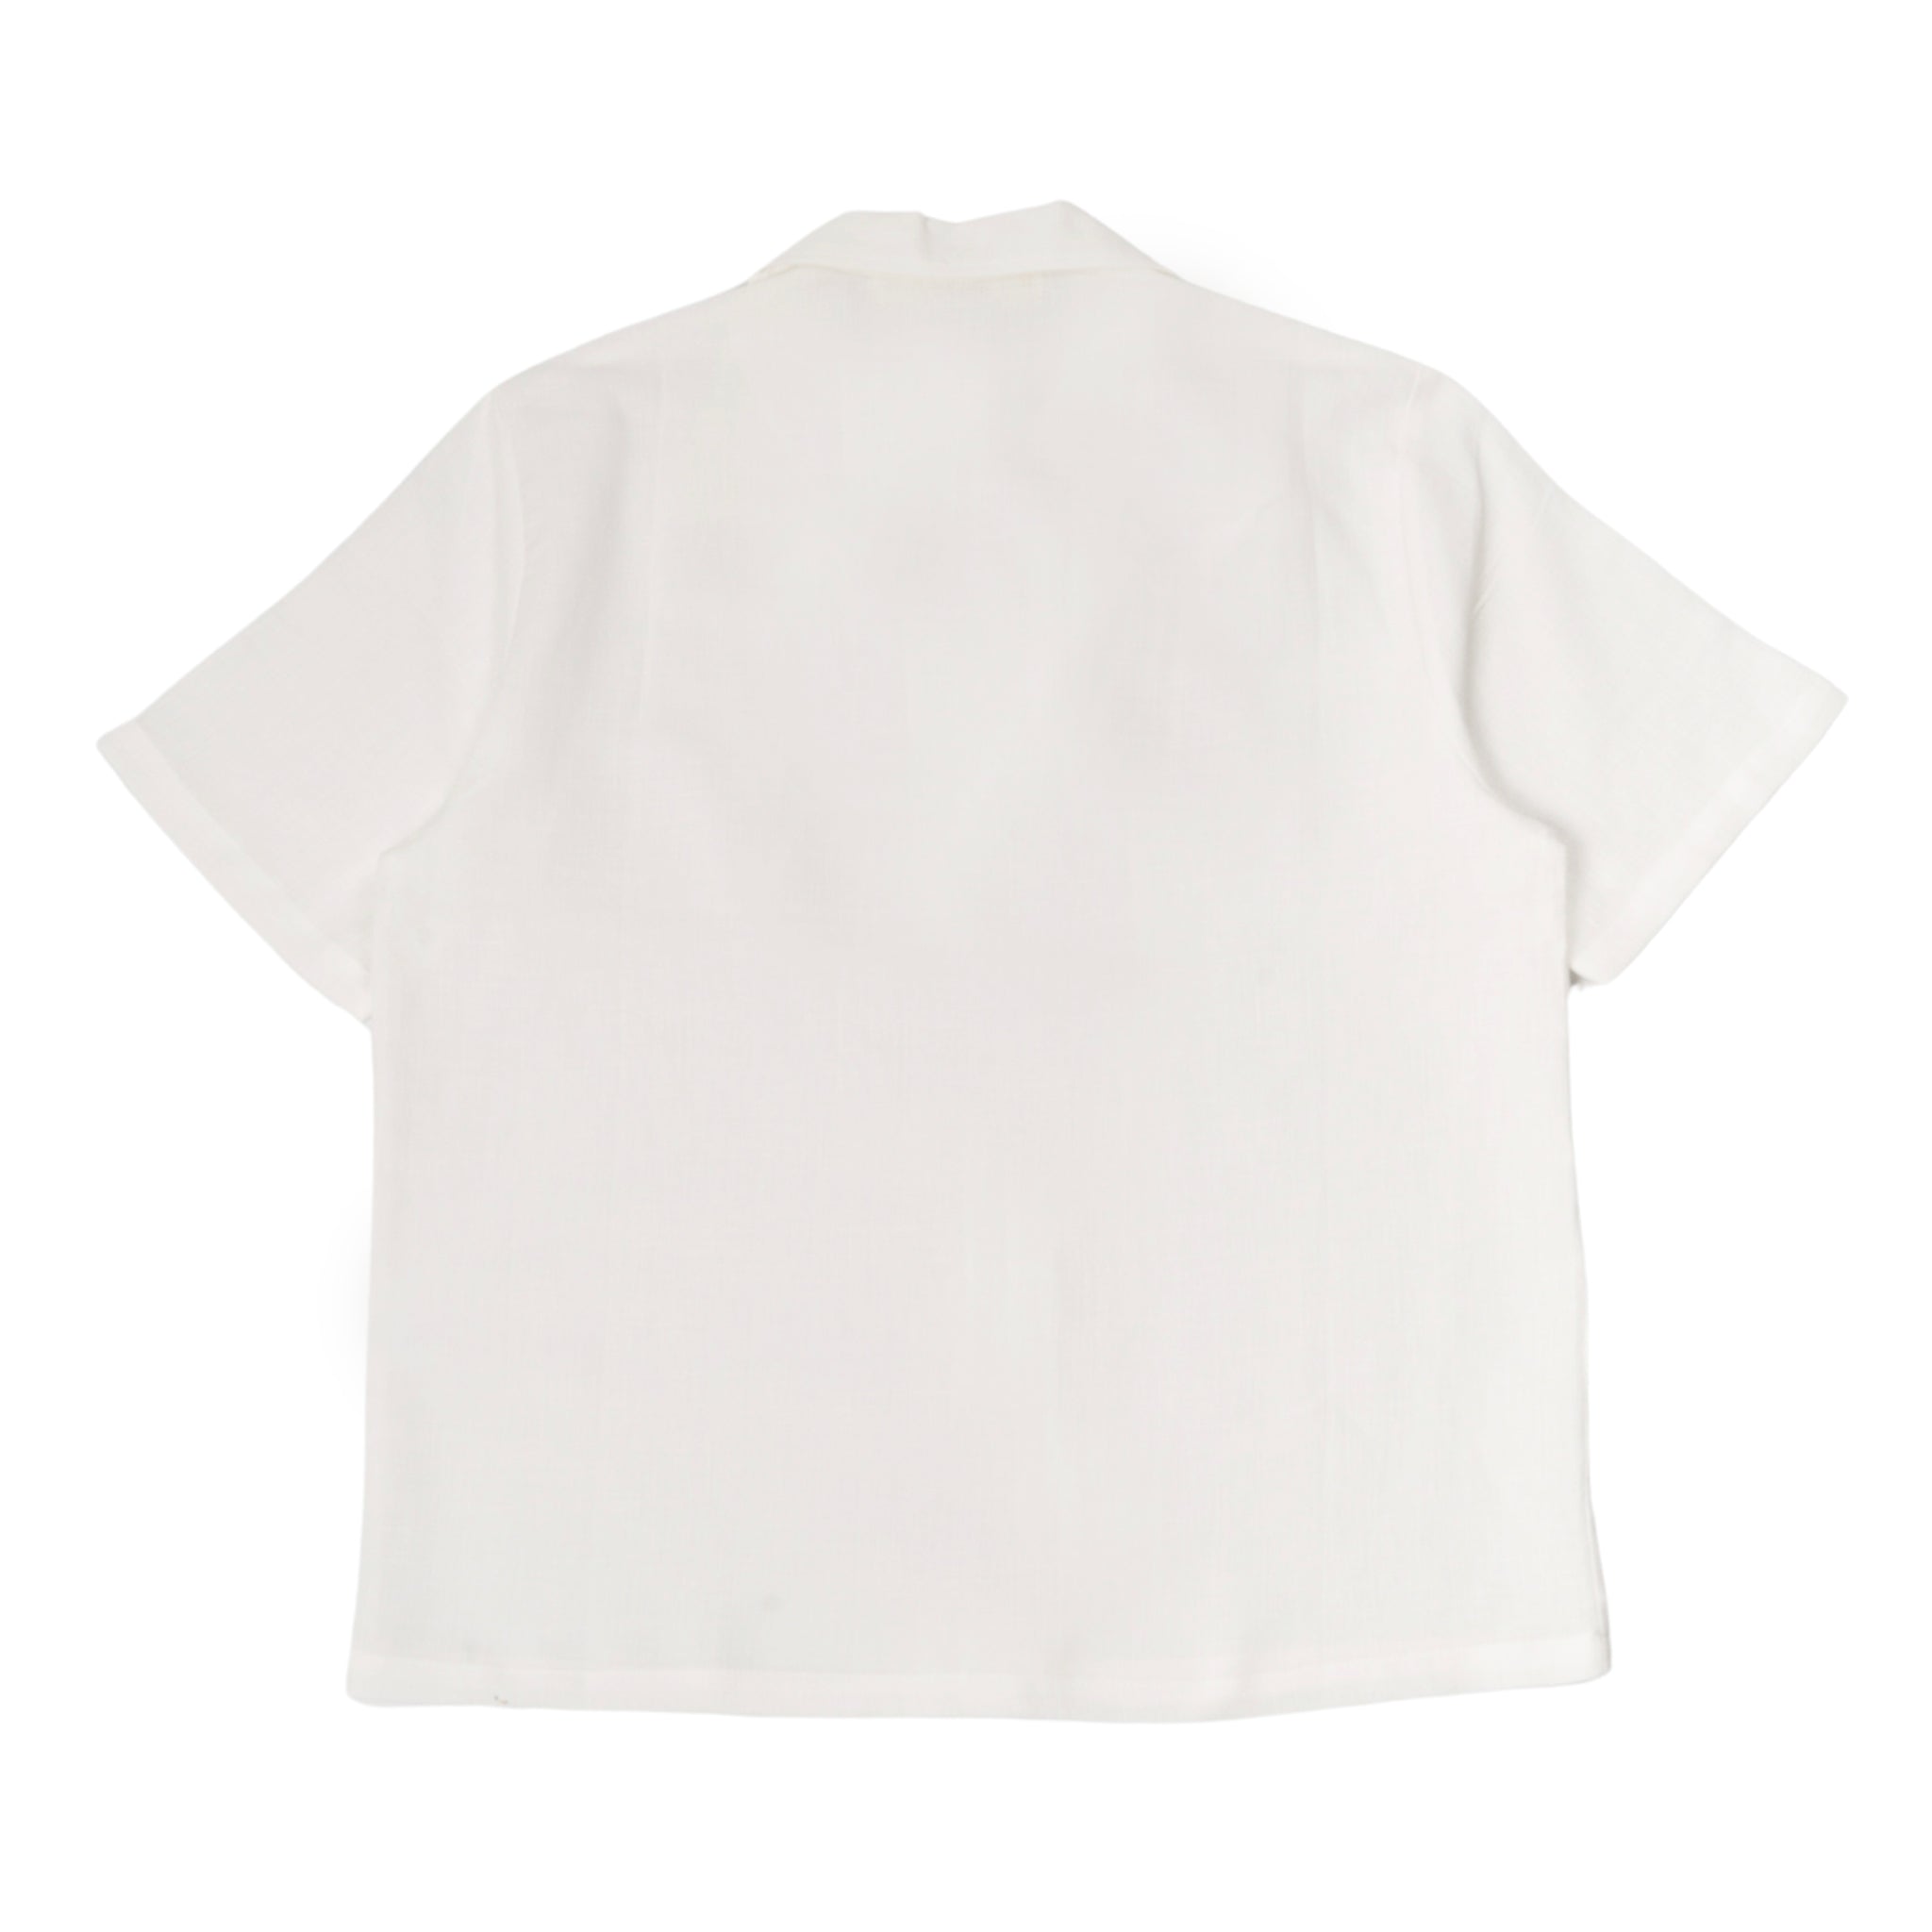 Dalian camicia in bianco